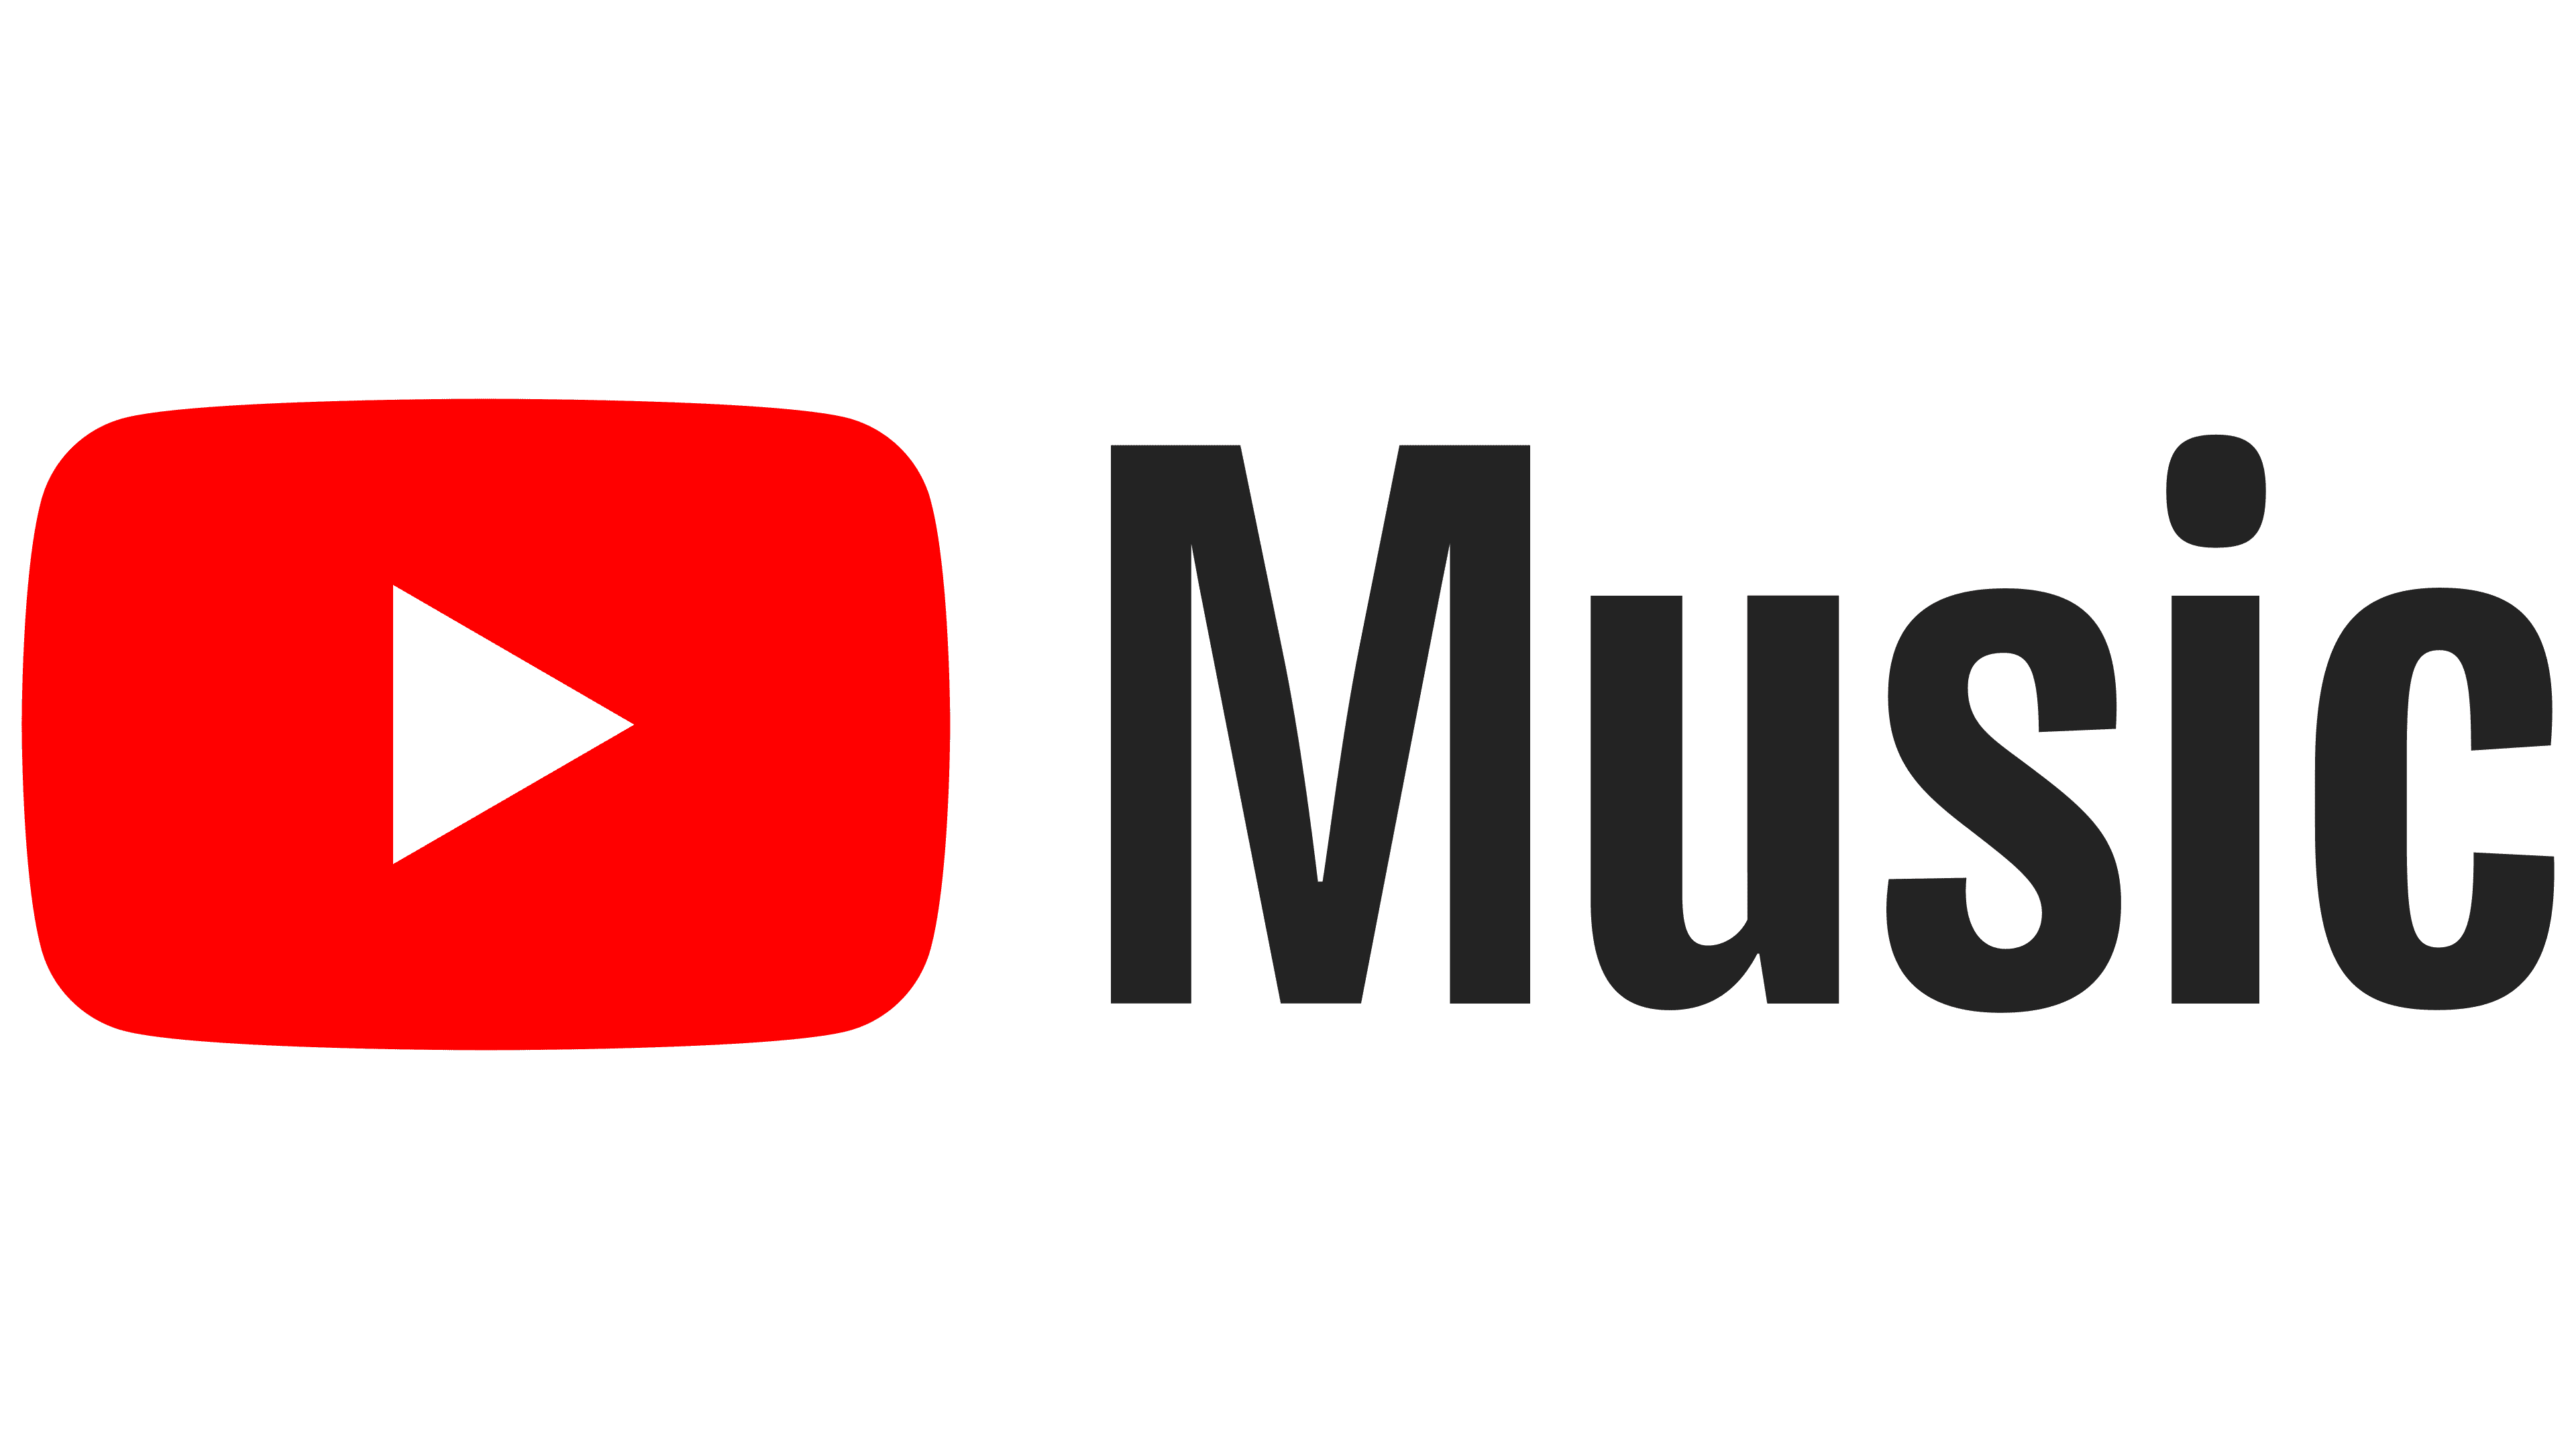 YouTube Music Logo - YouTube Music Logo, symbol, meaning